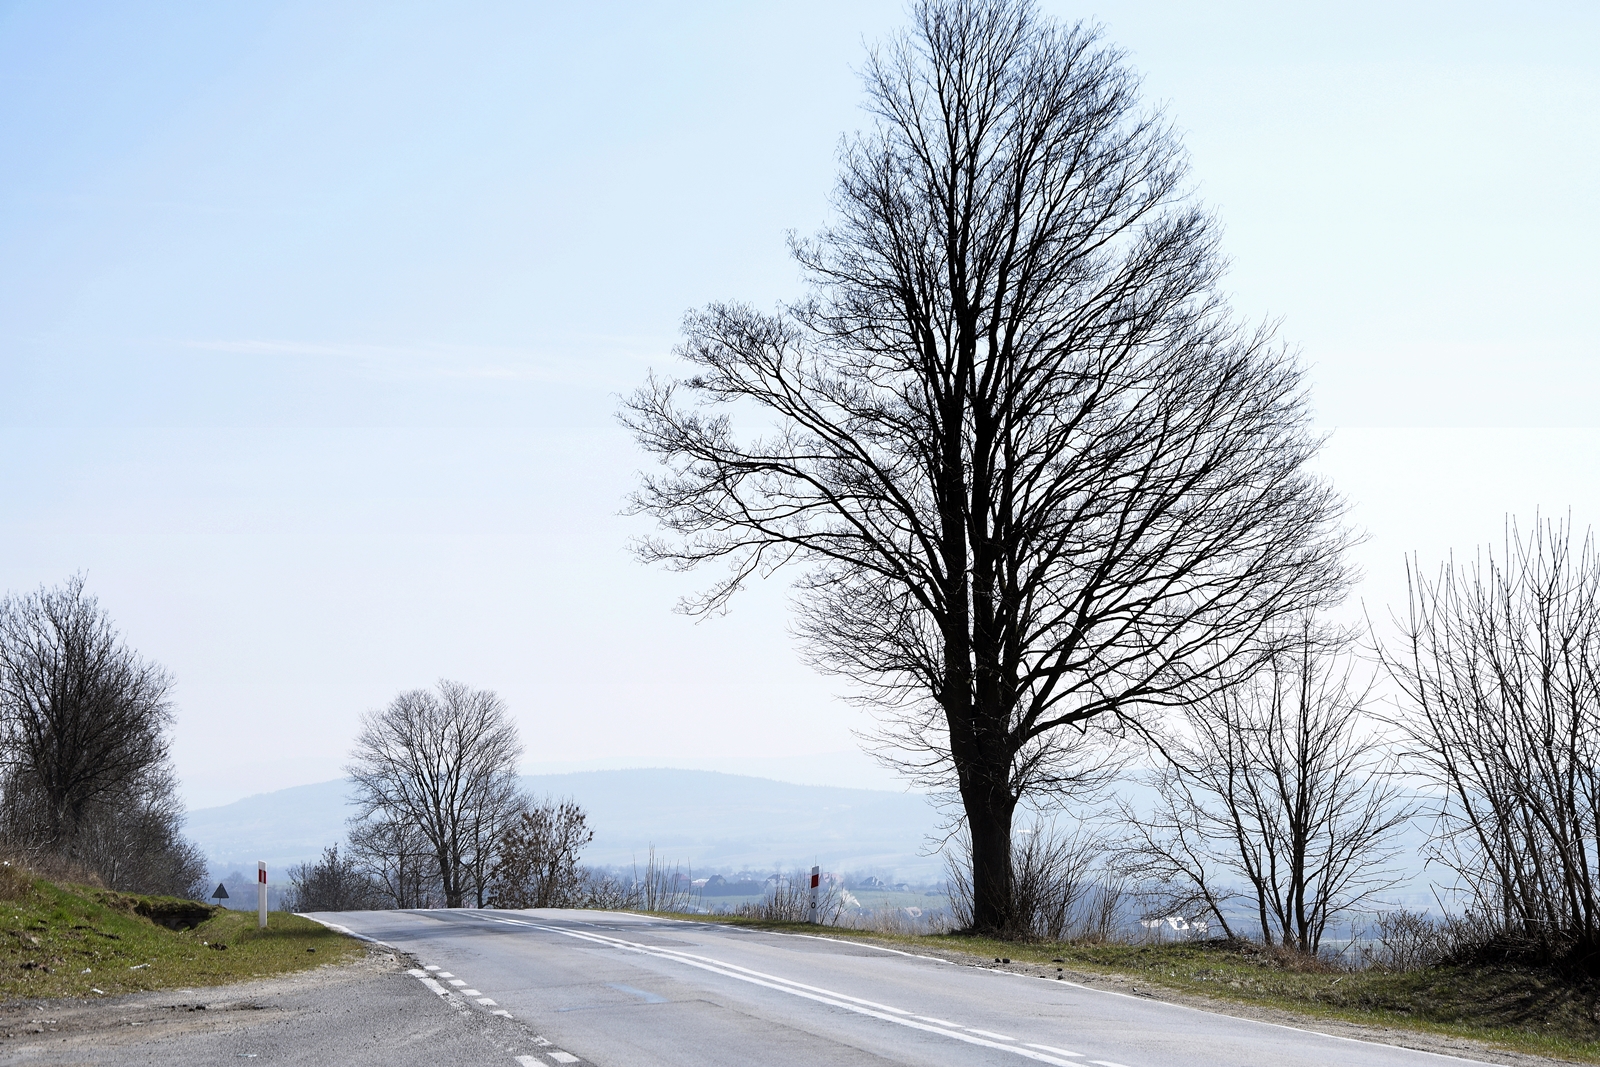 Bezlistne drzewo przy drodze szybkiego ruchu, za nim widoczne Góry Świętokrzyskie.